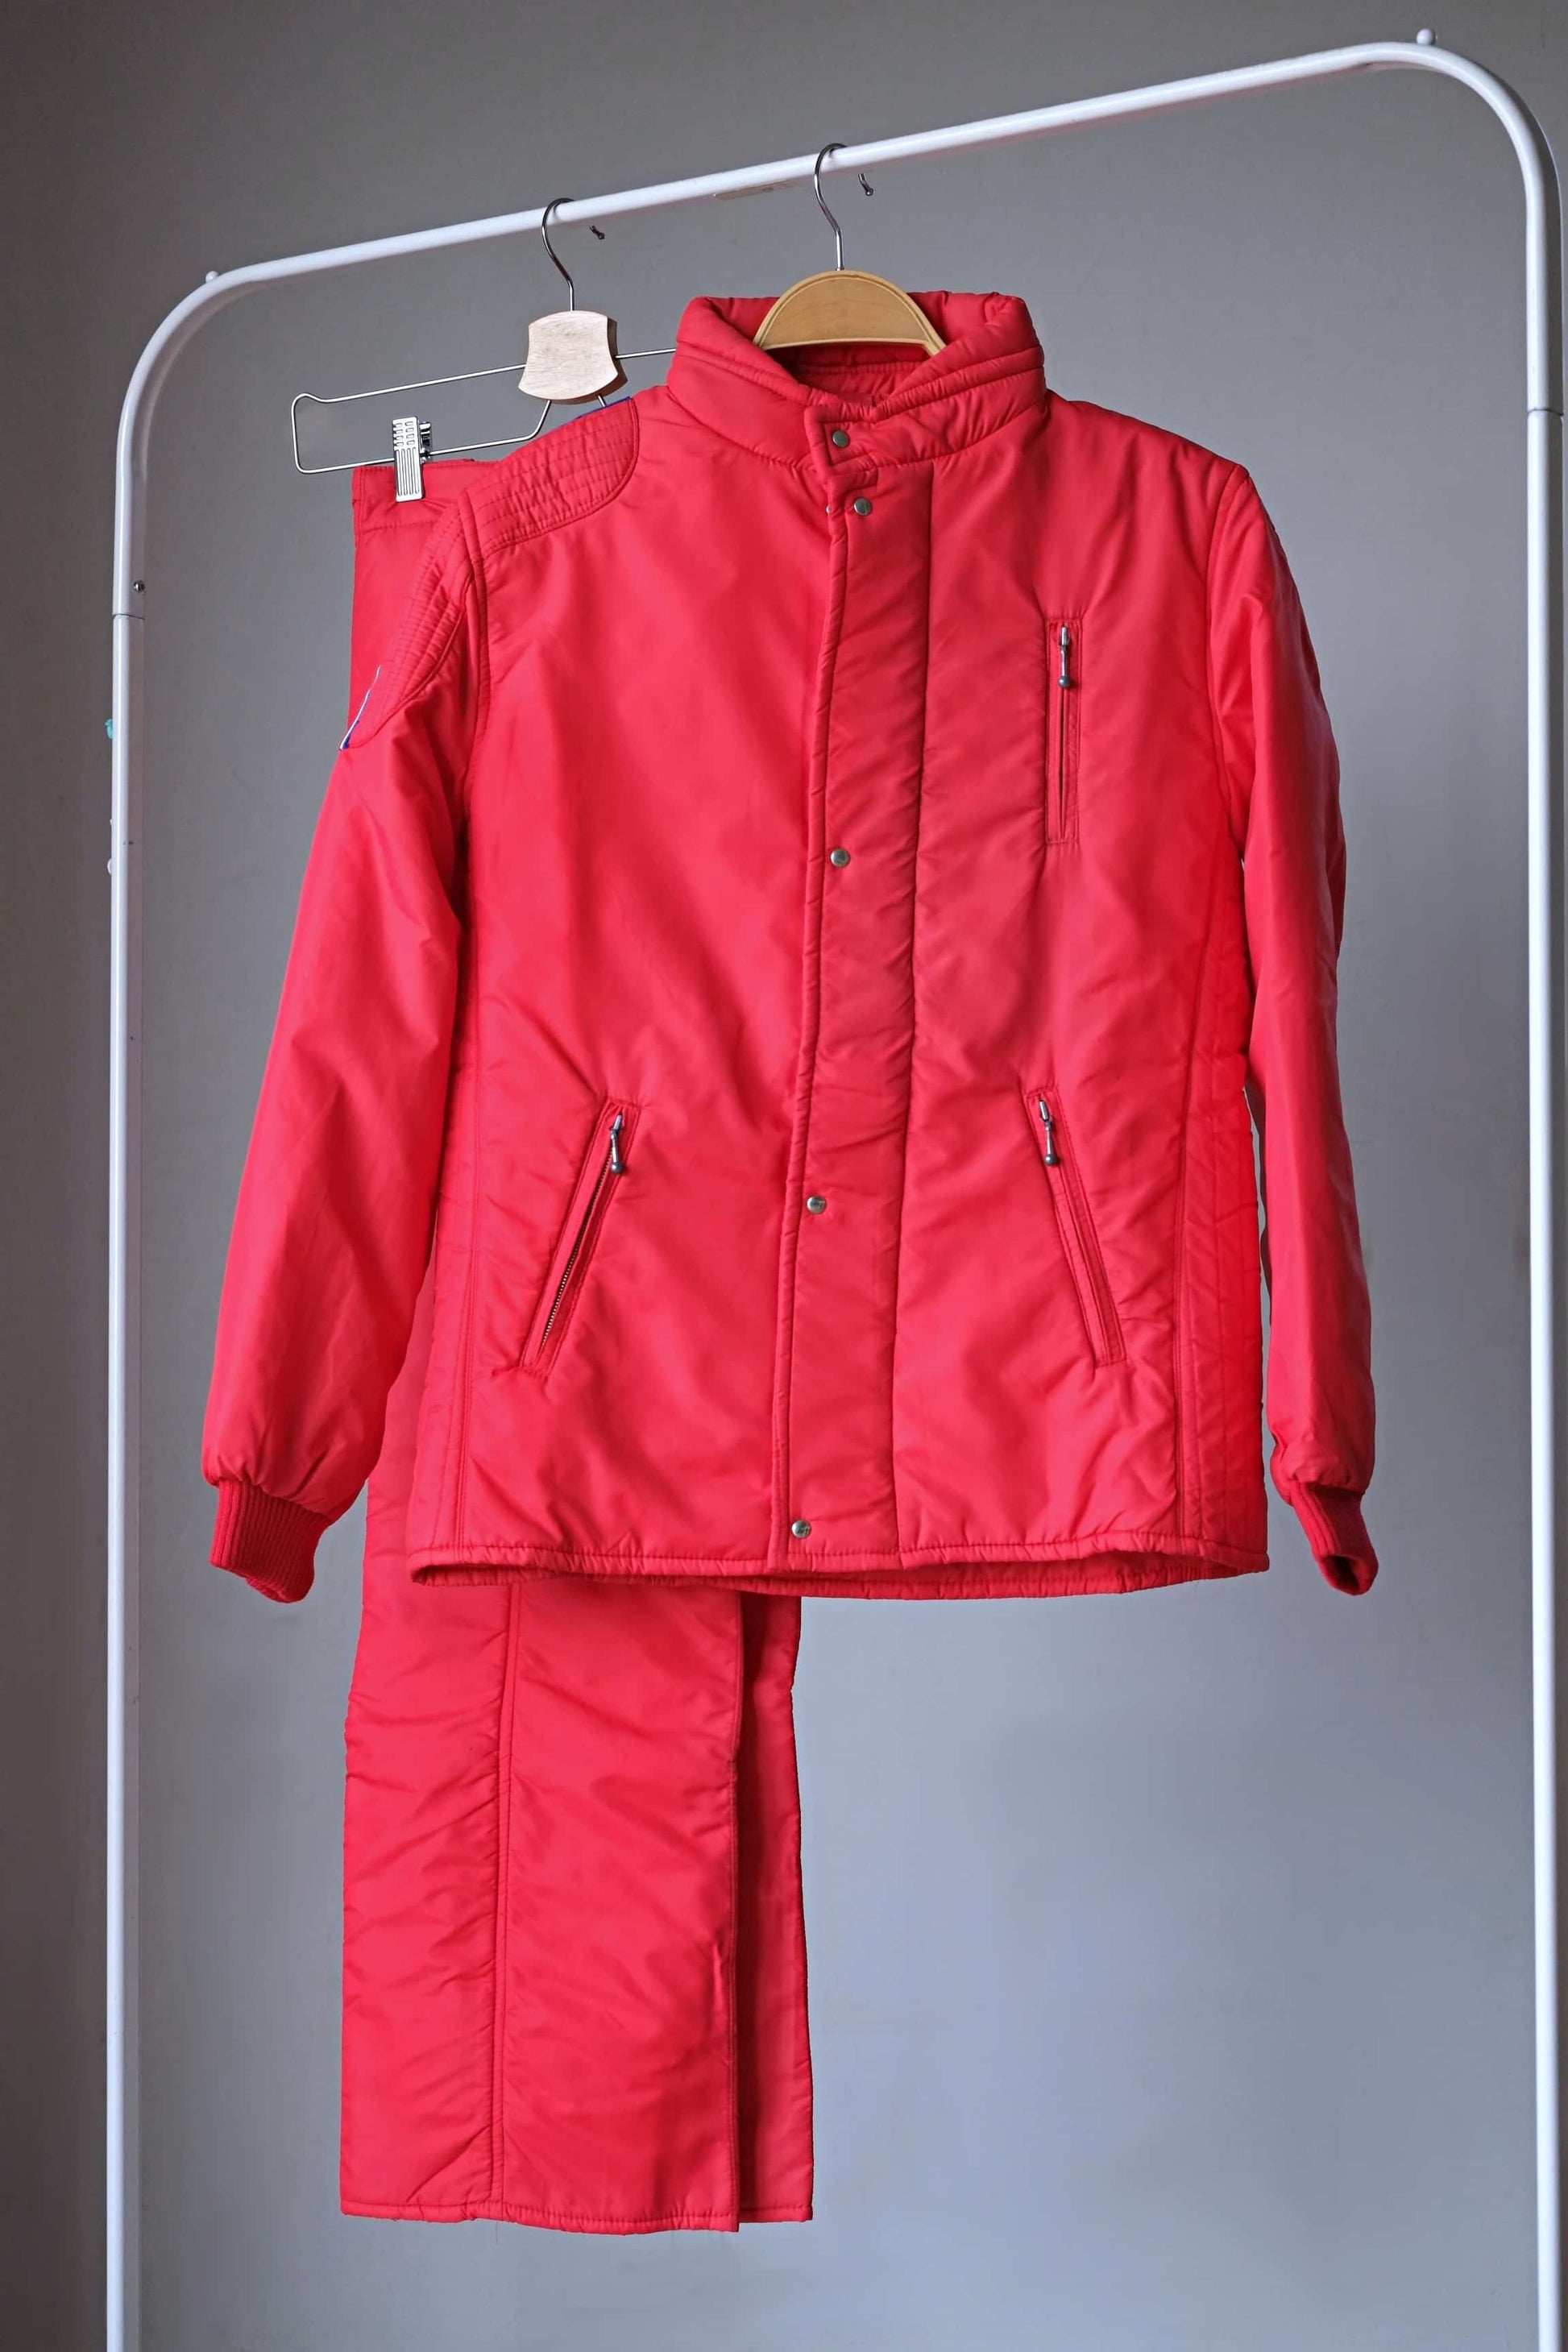 Vintage Men's 70's Ski Suit red